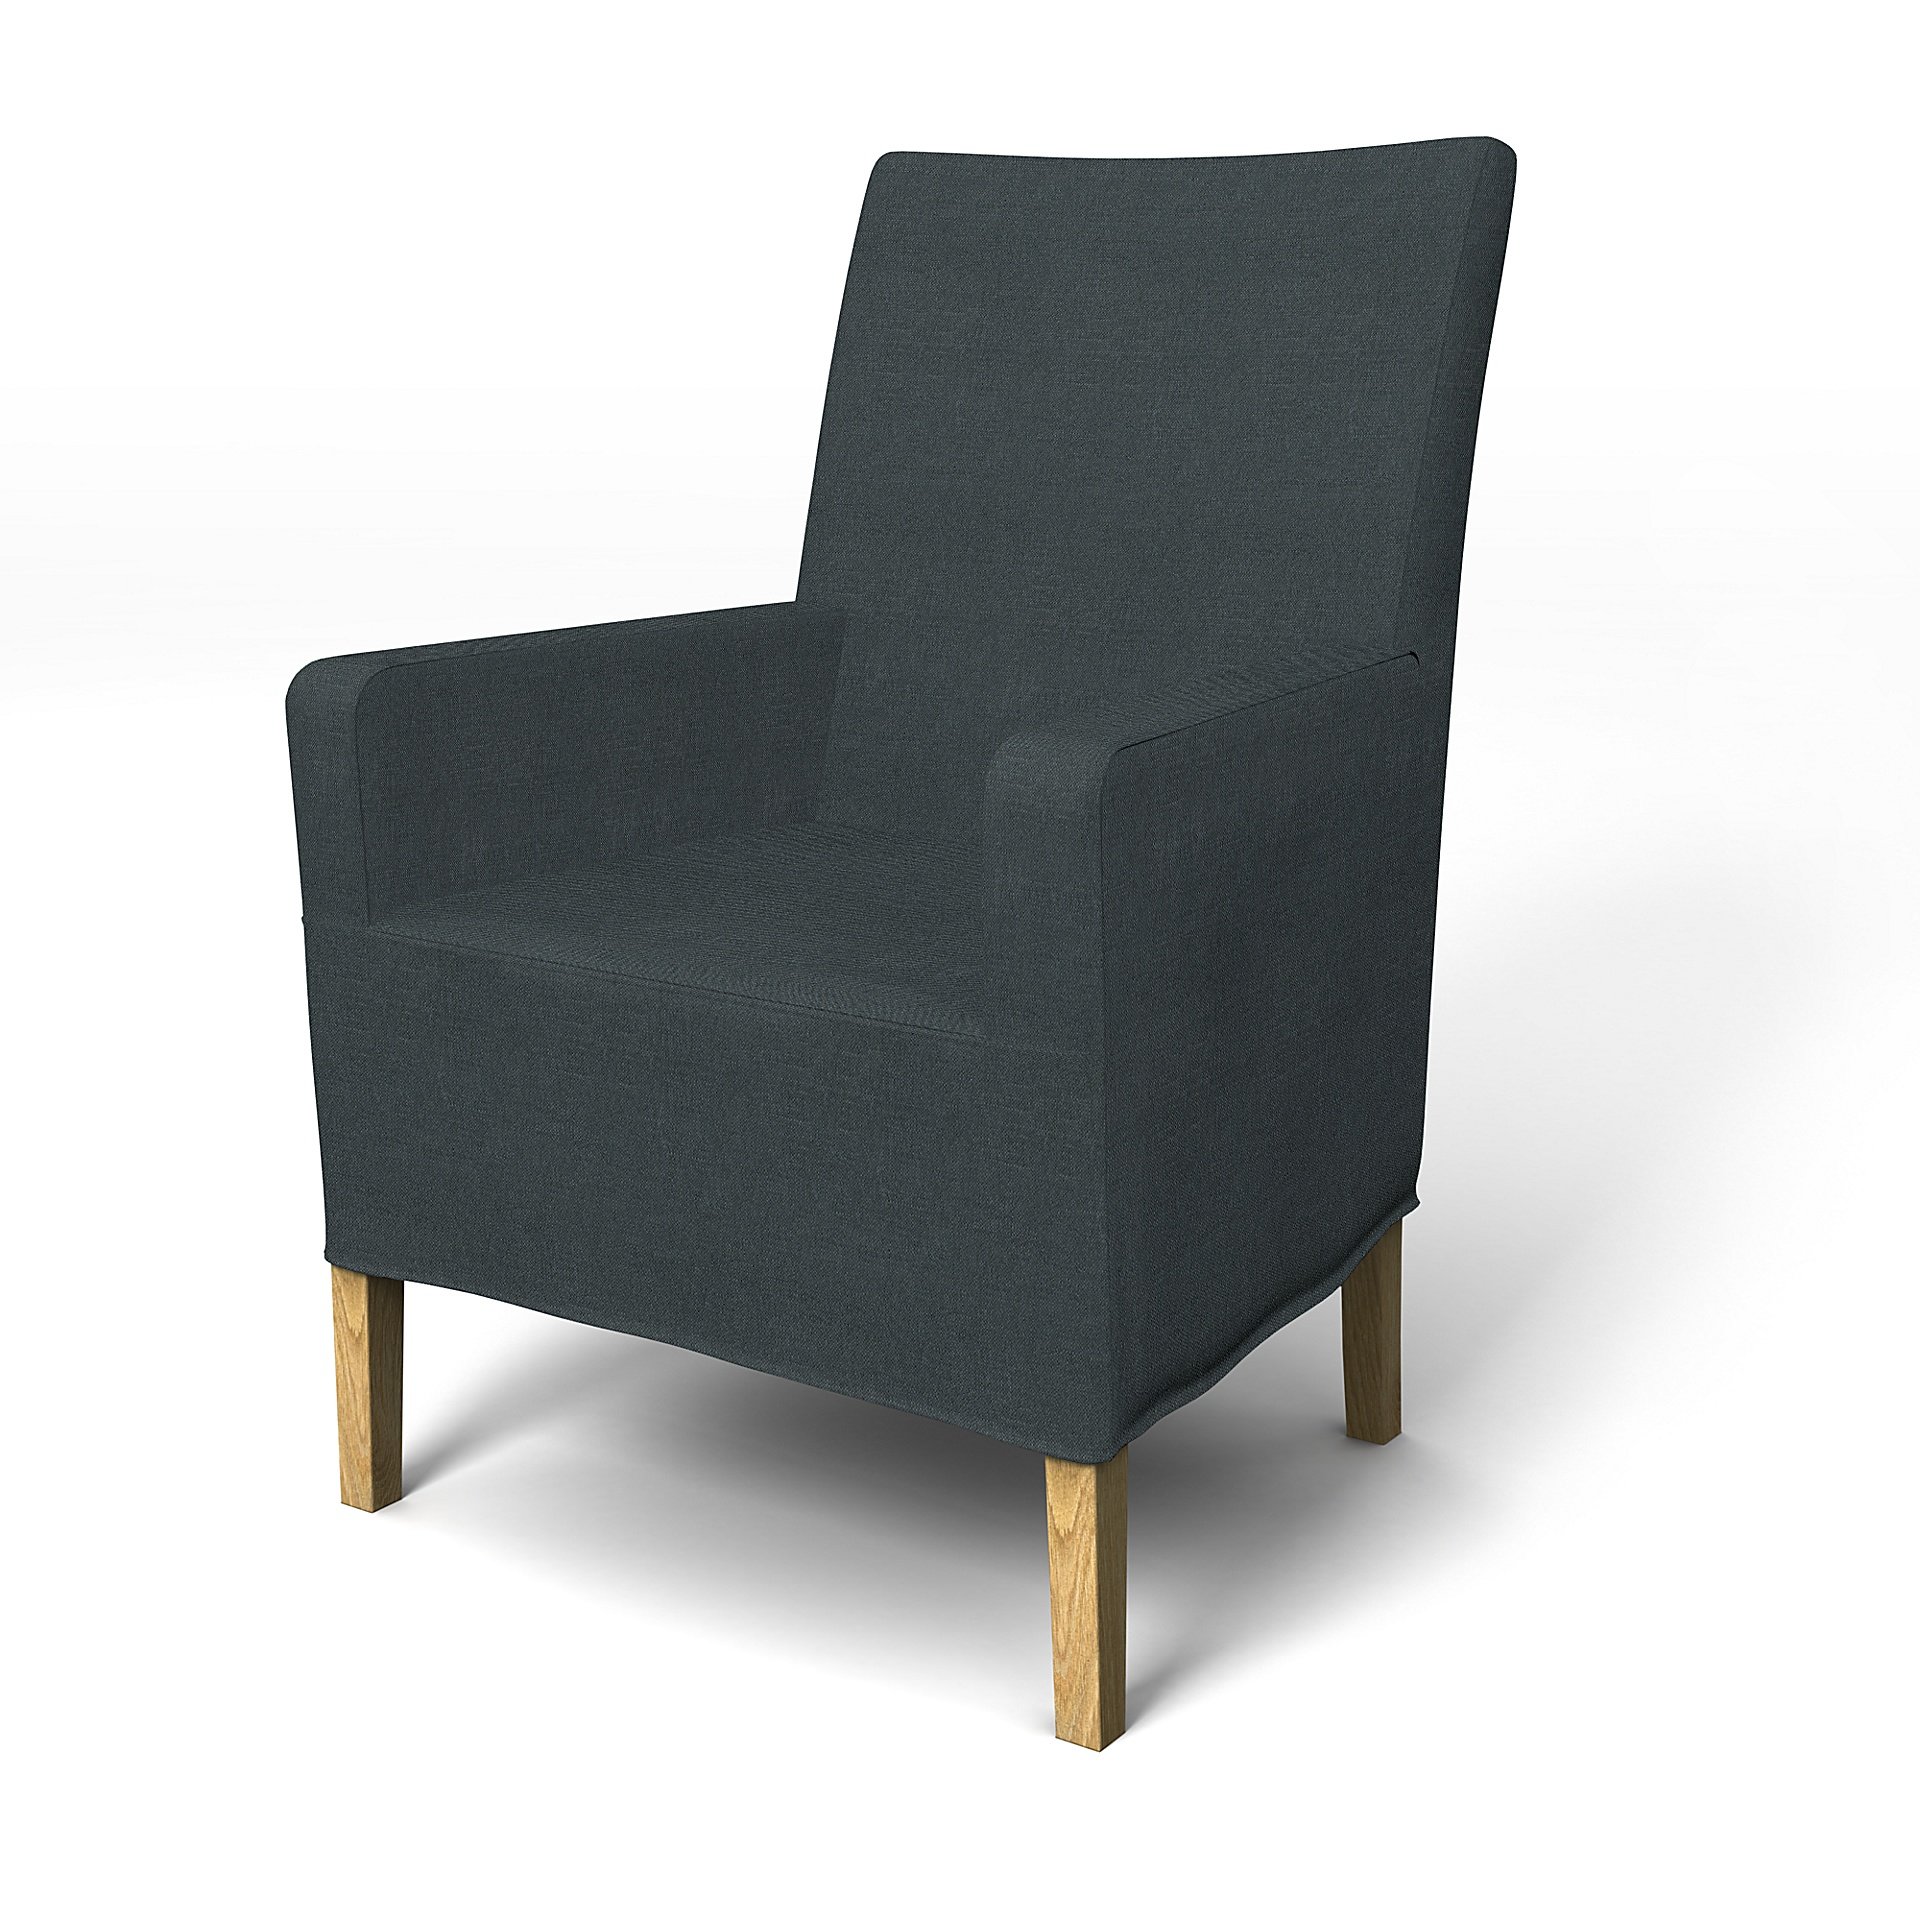 IKEA - Henriksdal, Chair cover w/ armrest, medium length skirt, Graphite Grey, Linen - Bemz